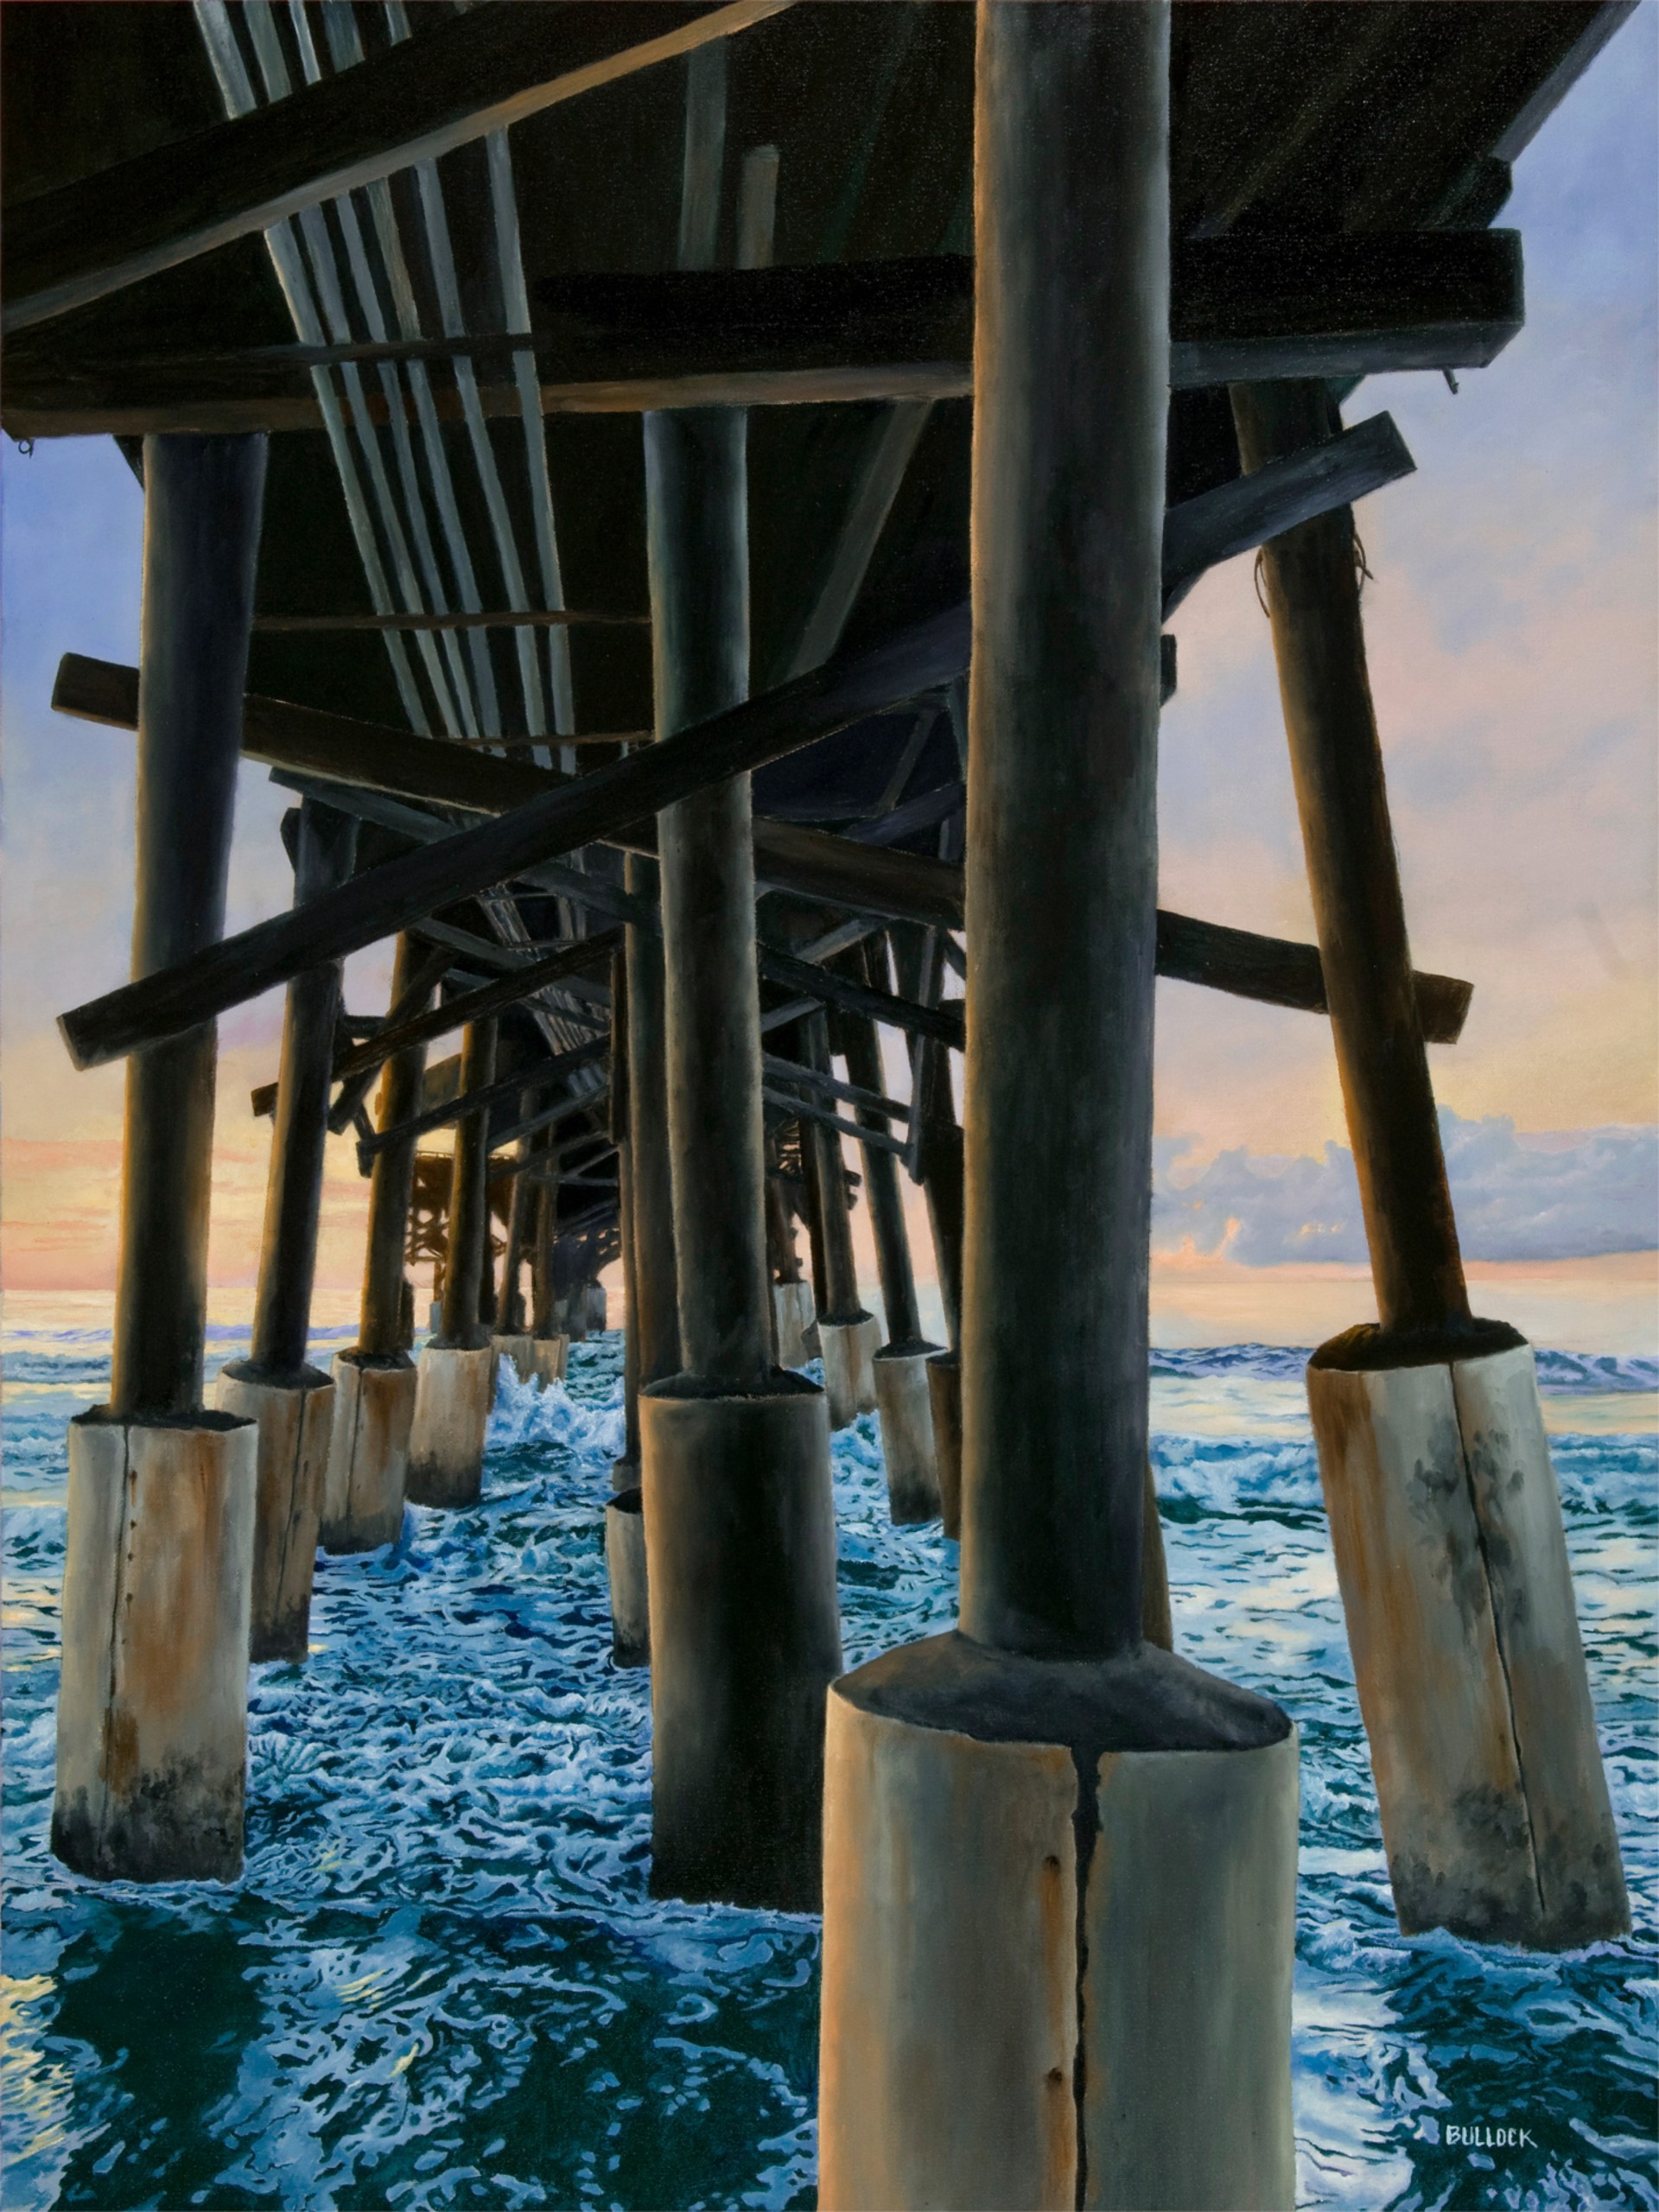 Under the Boardwalk by Michiel Bullock